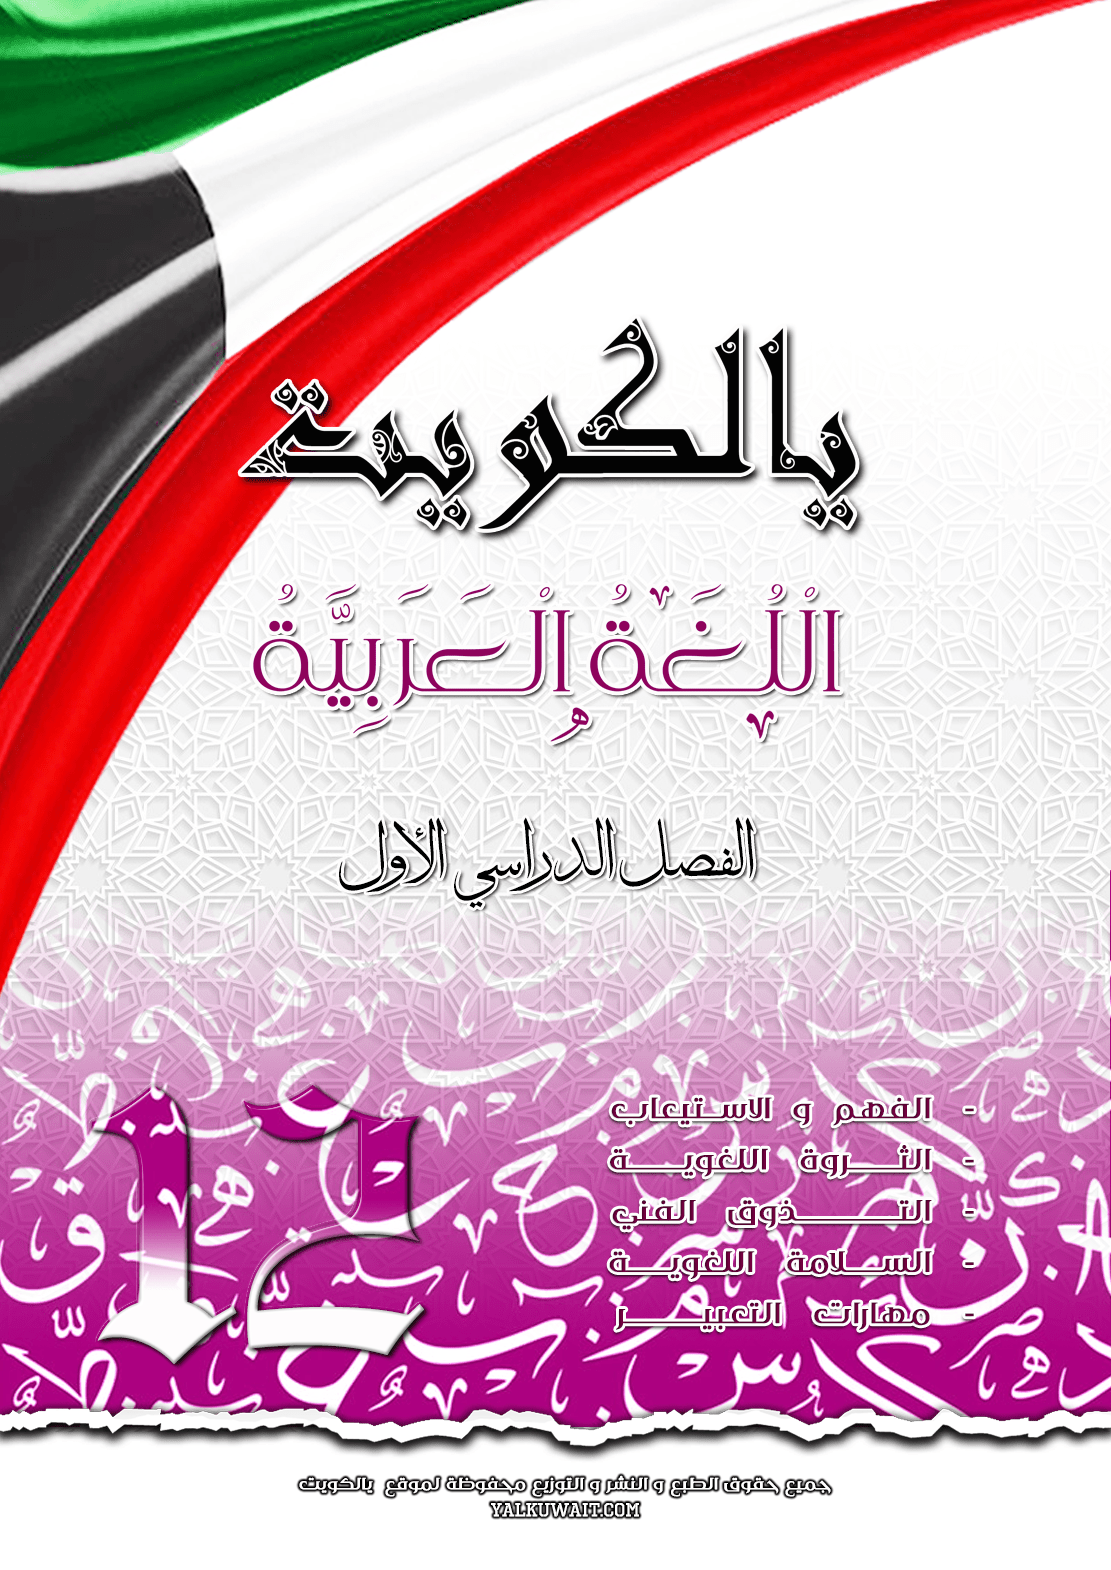 مذكرة يالكويت في اللغة العربية || الصف الثاني عشر || الفصل الأول